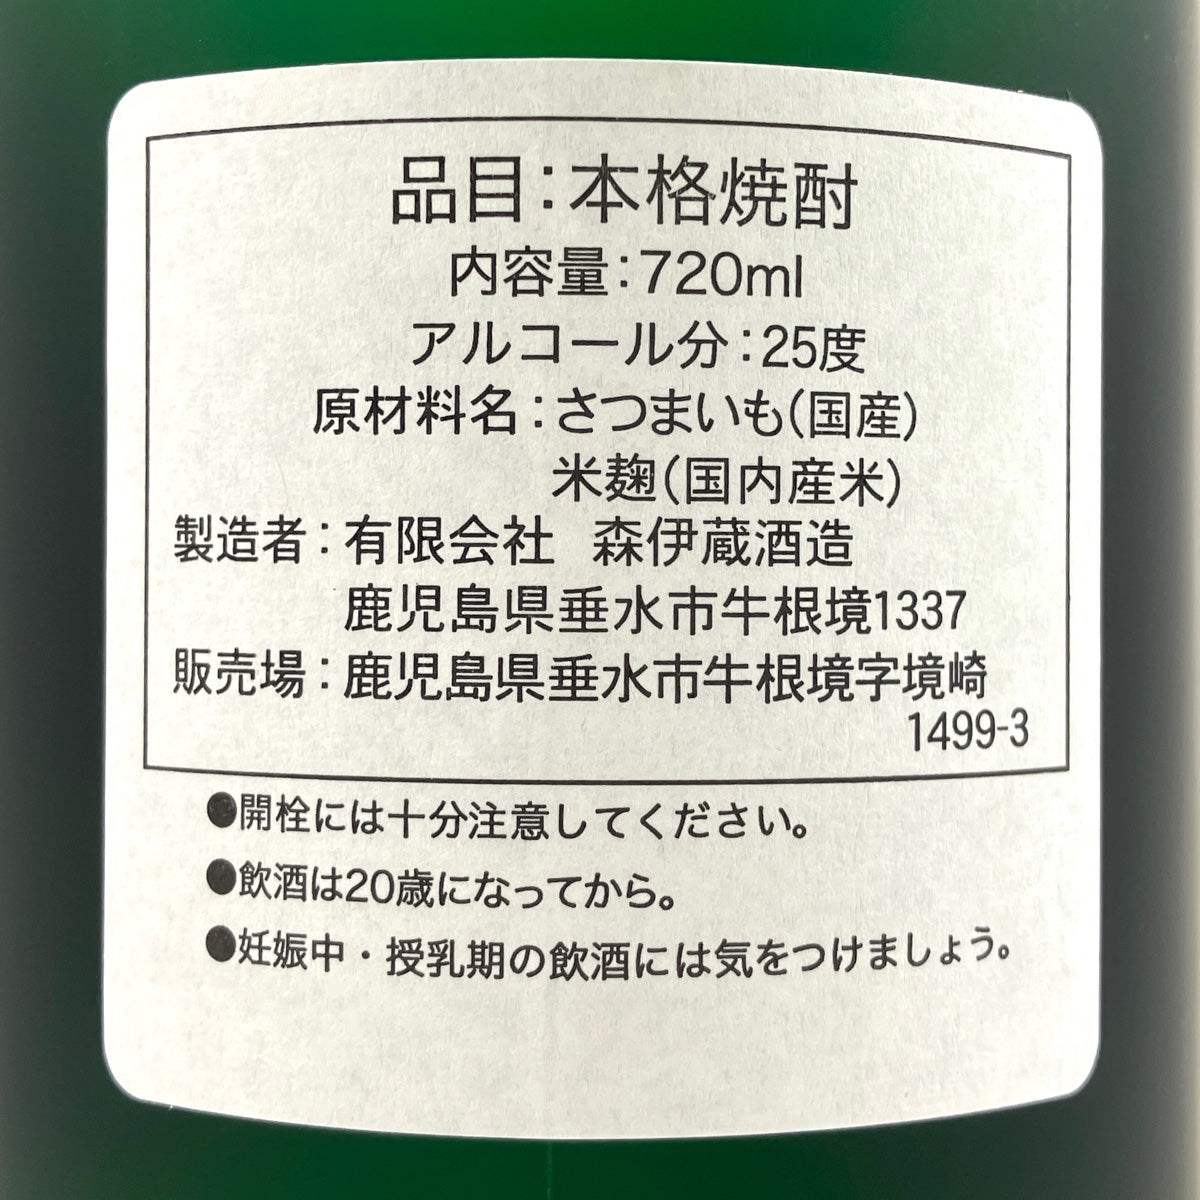 人気第1位 720ml【芋焼酎】 森伊蔵 720ml 飲料・酒